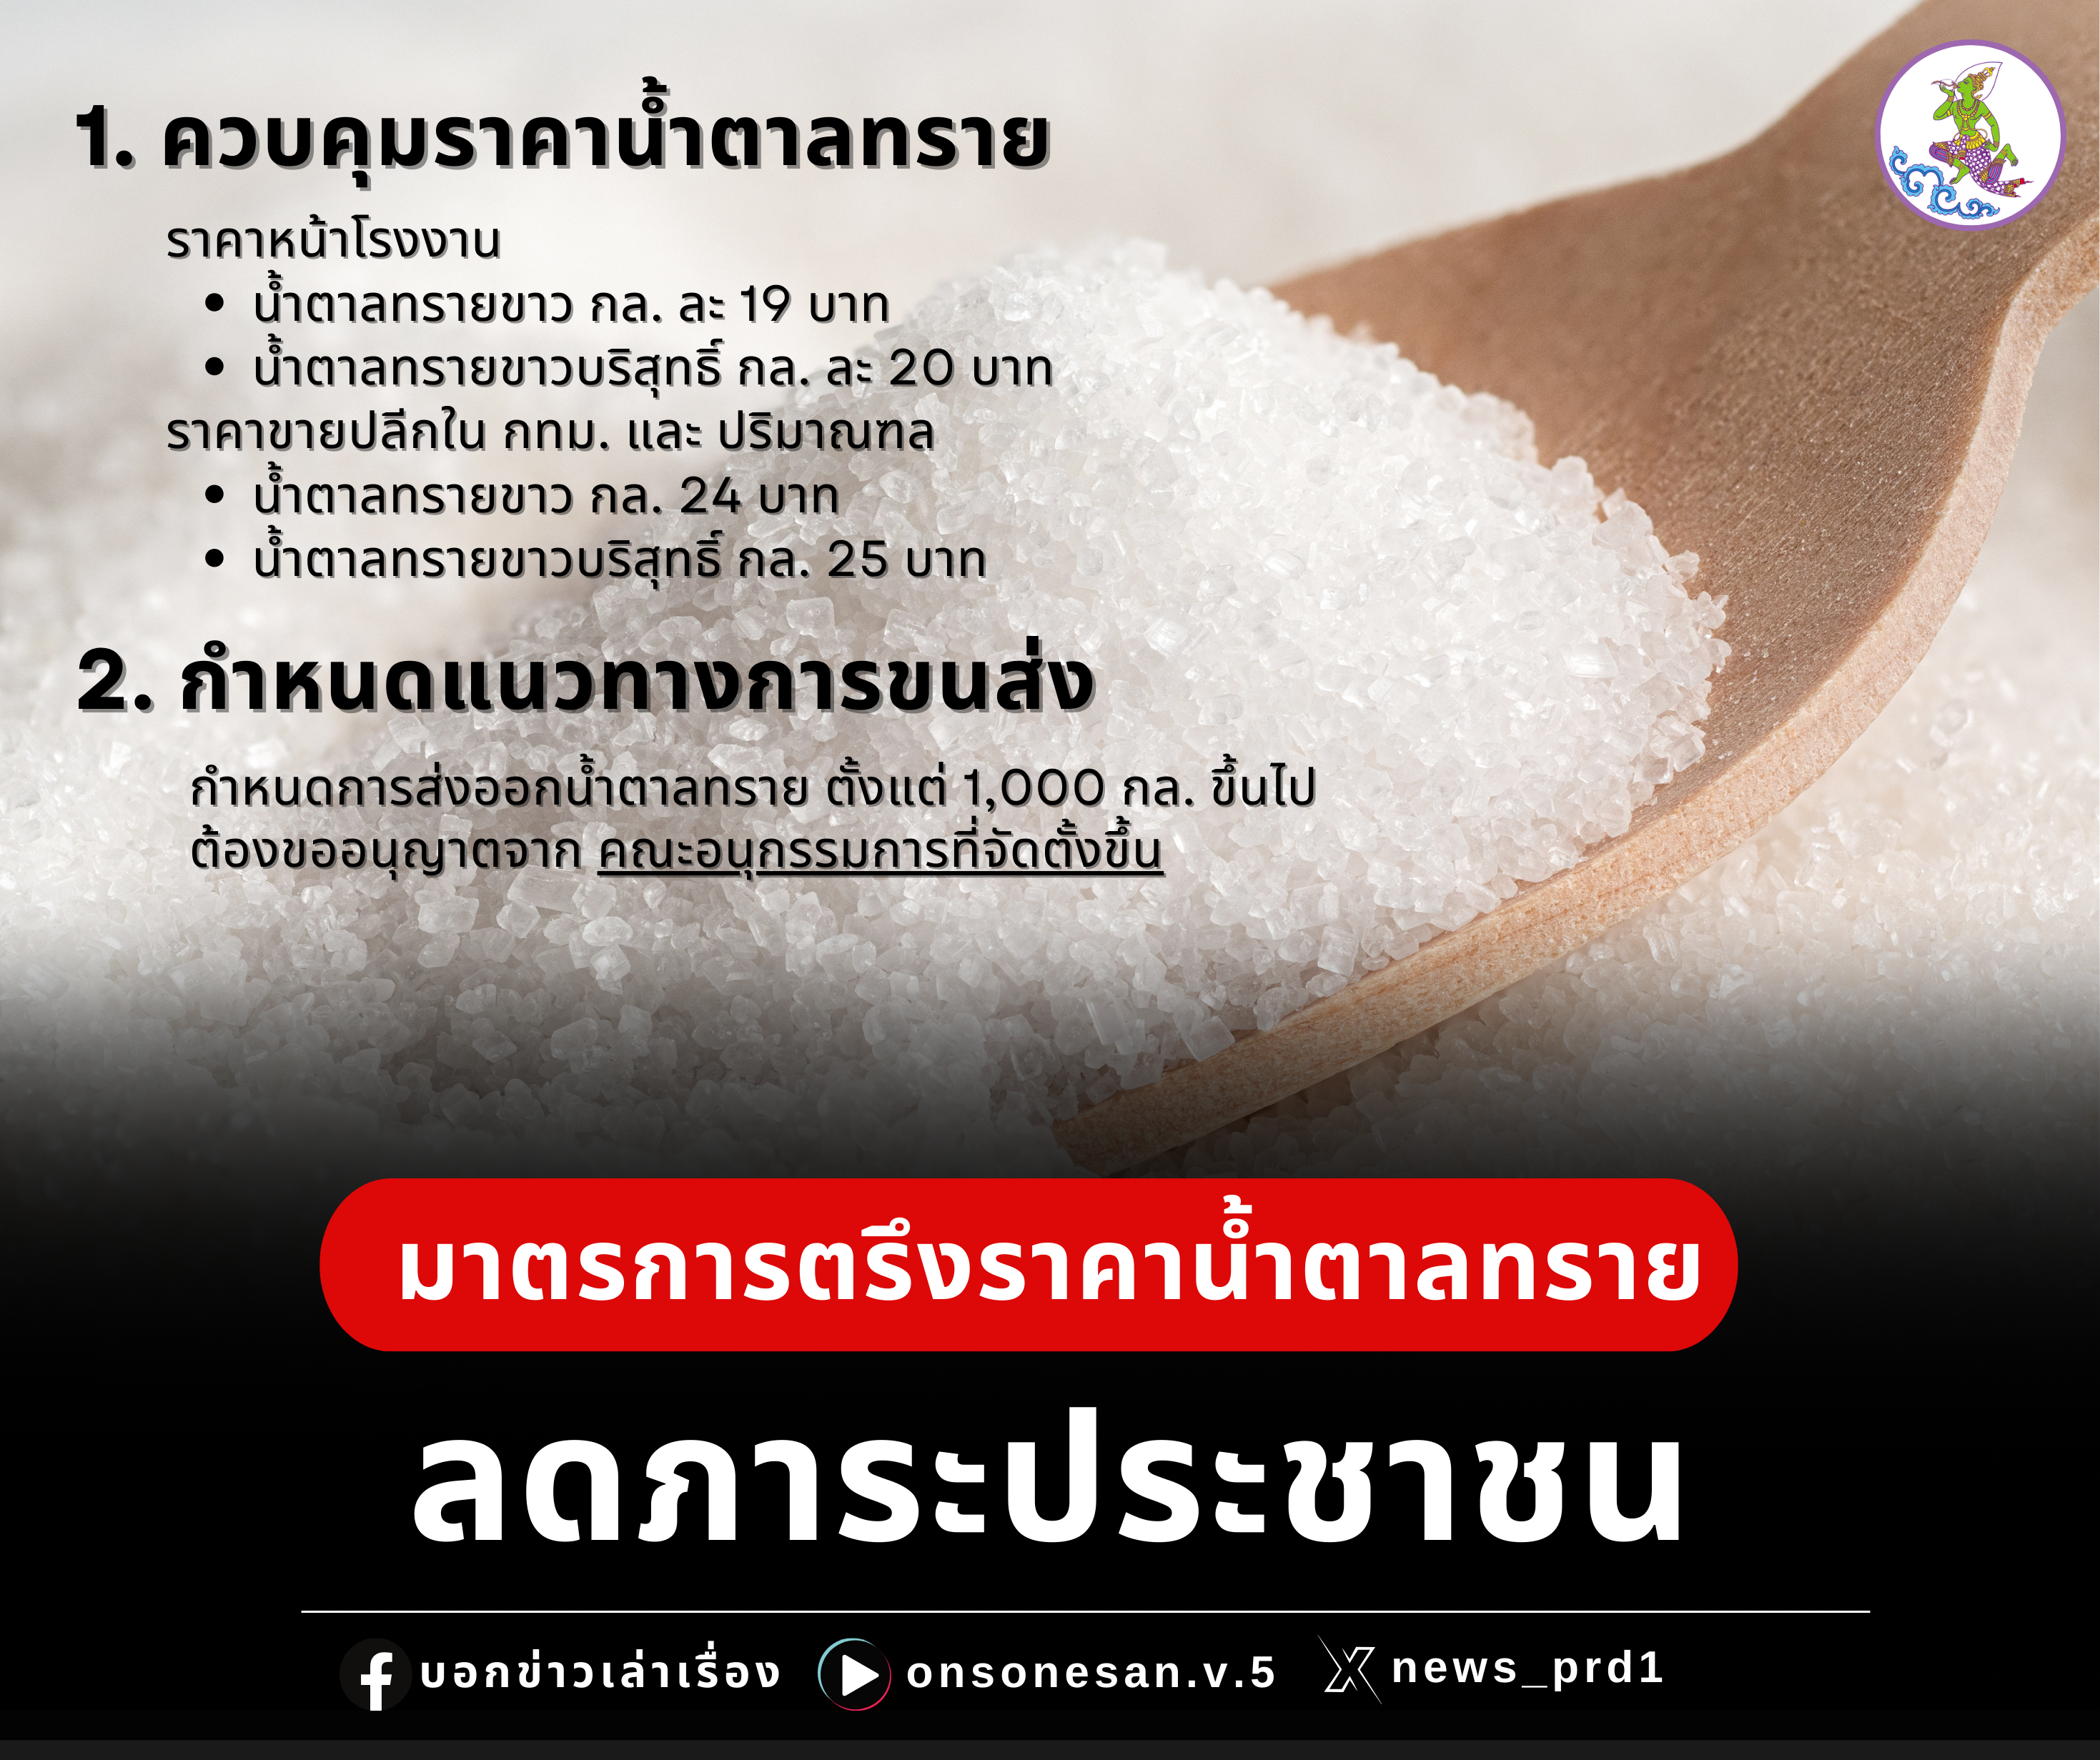 มาตรการตรึงราคาน้ำตาลทรายลดภาระประชาชน